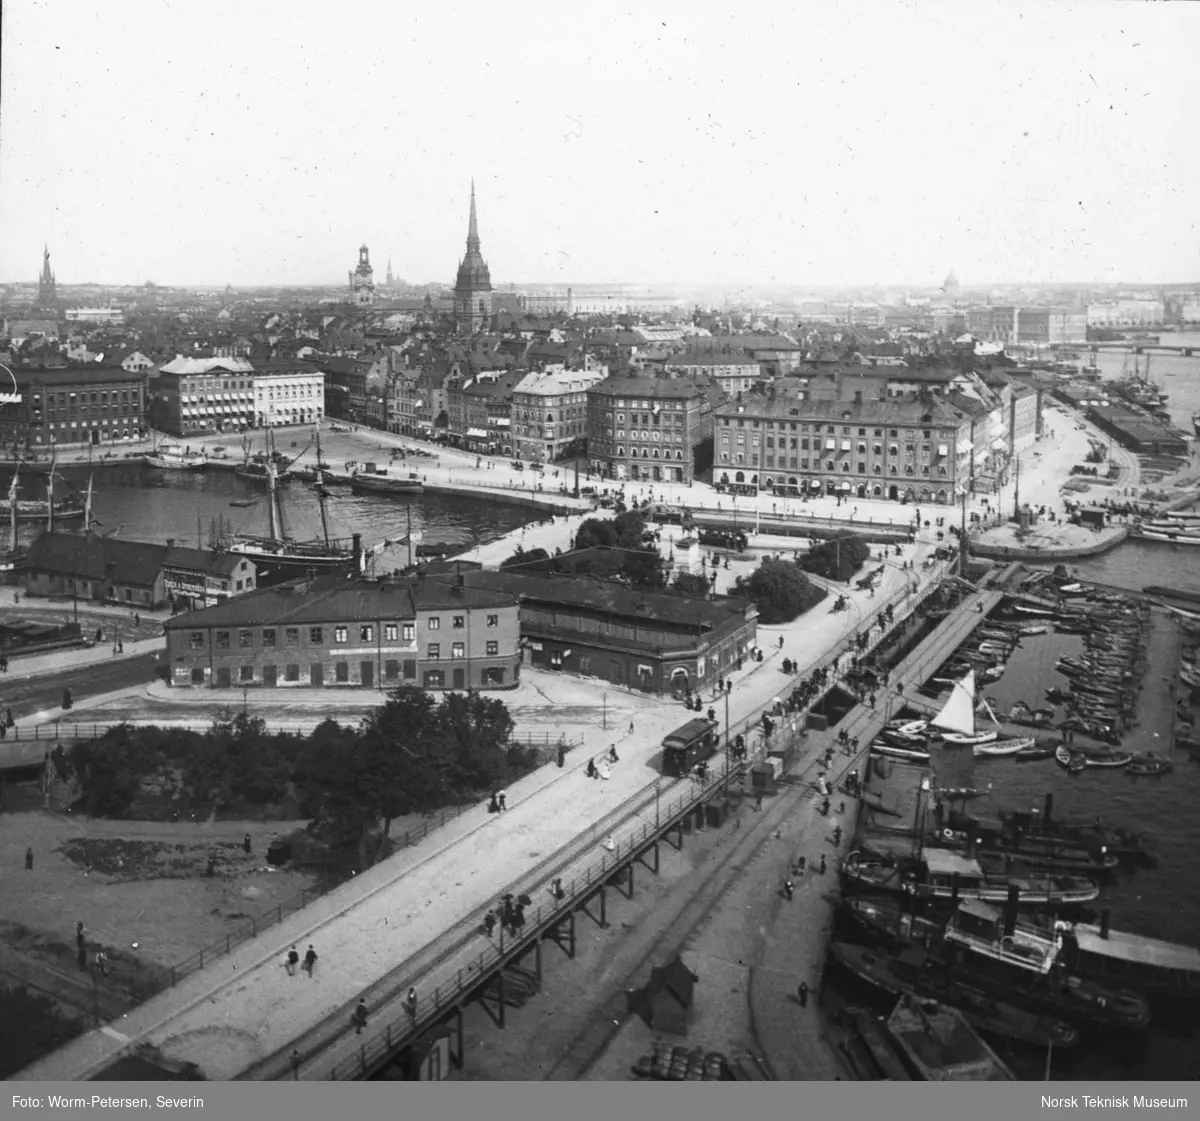 Stockholm og Utstillingen 1897: Panorama over byen fra heisen.